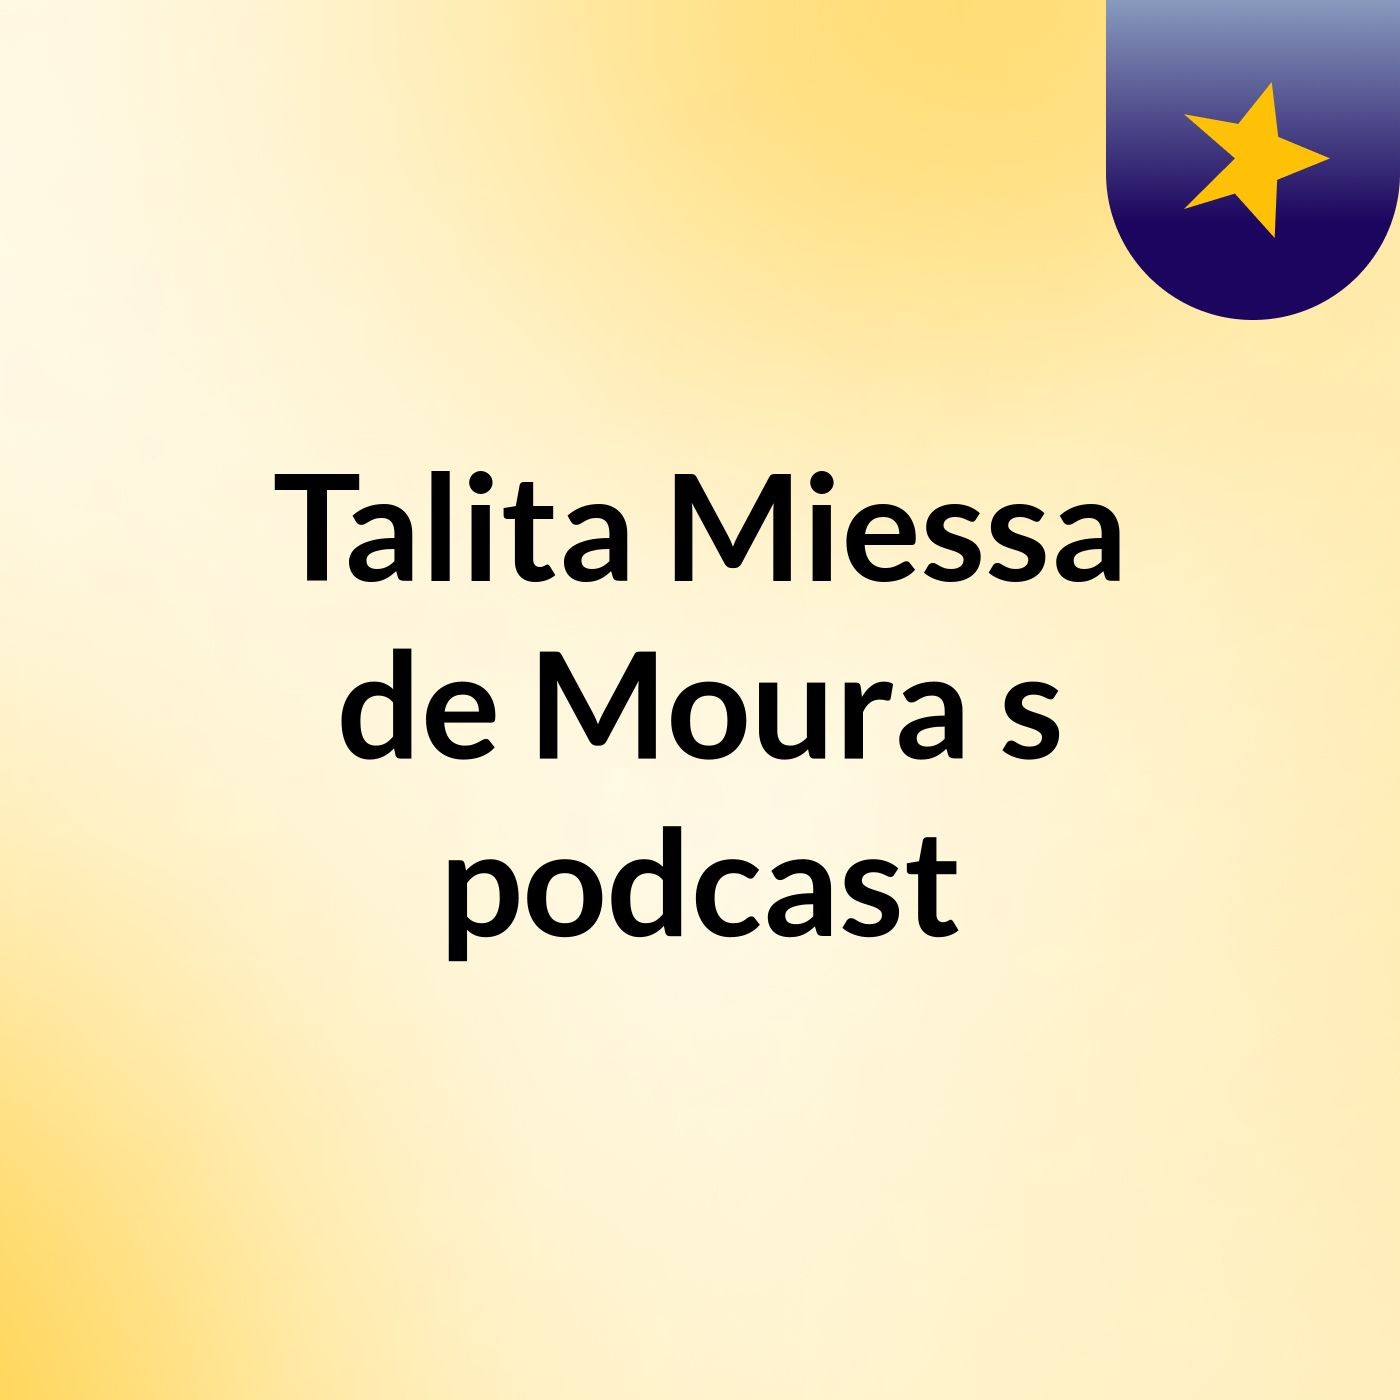 Talita Miessa de Moura's podcast